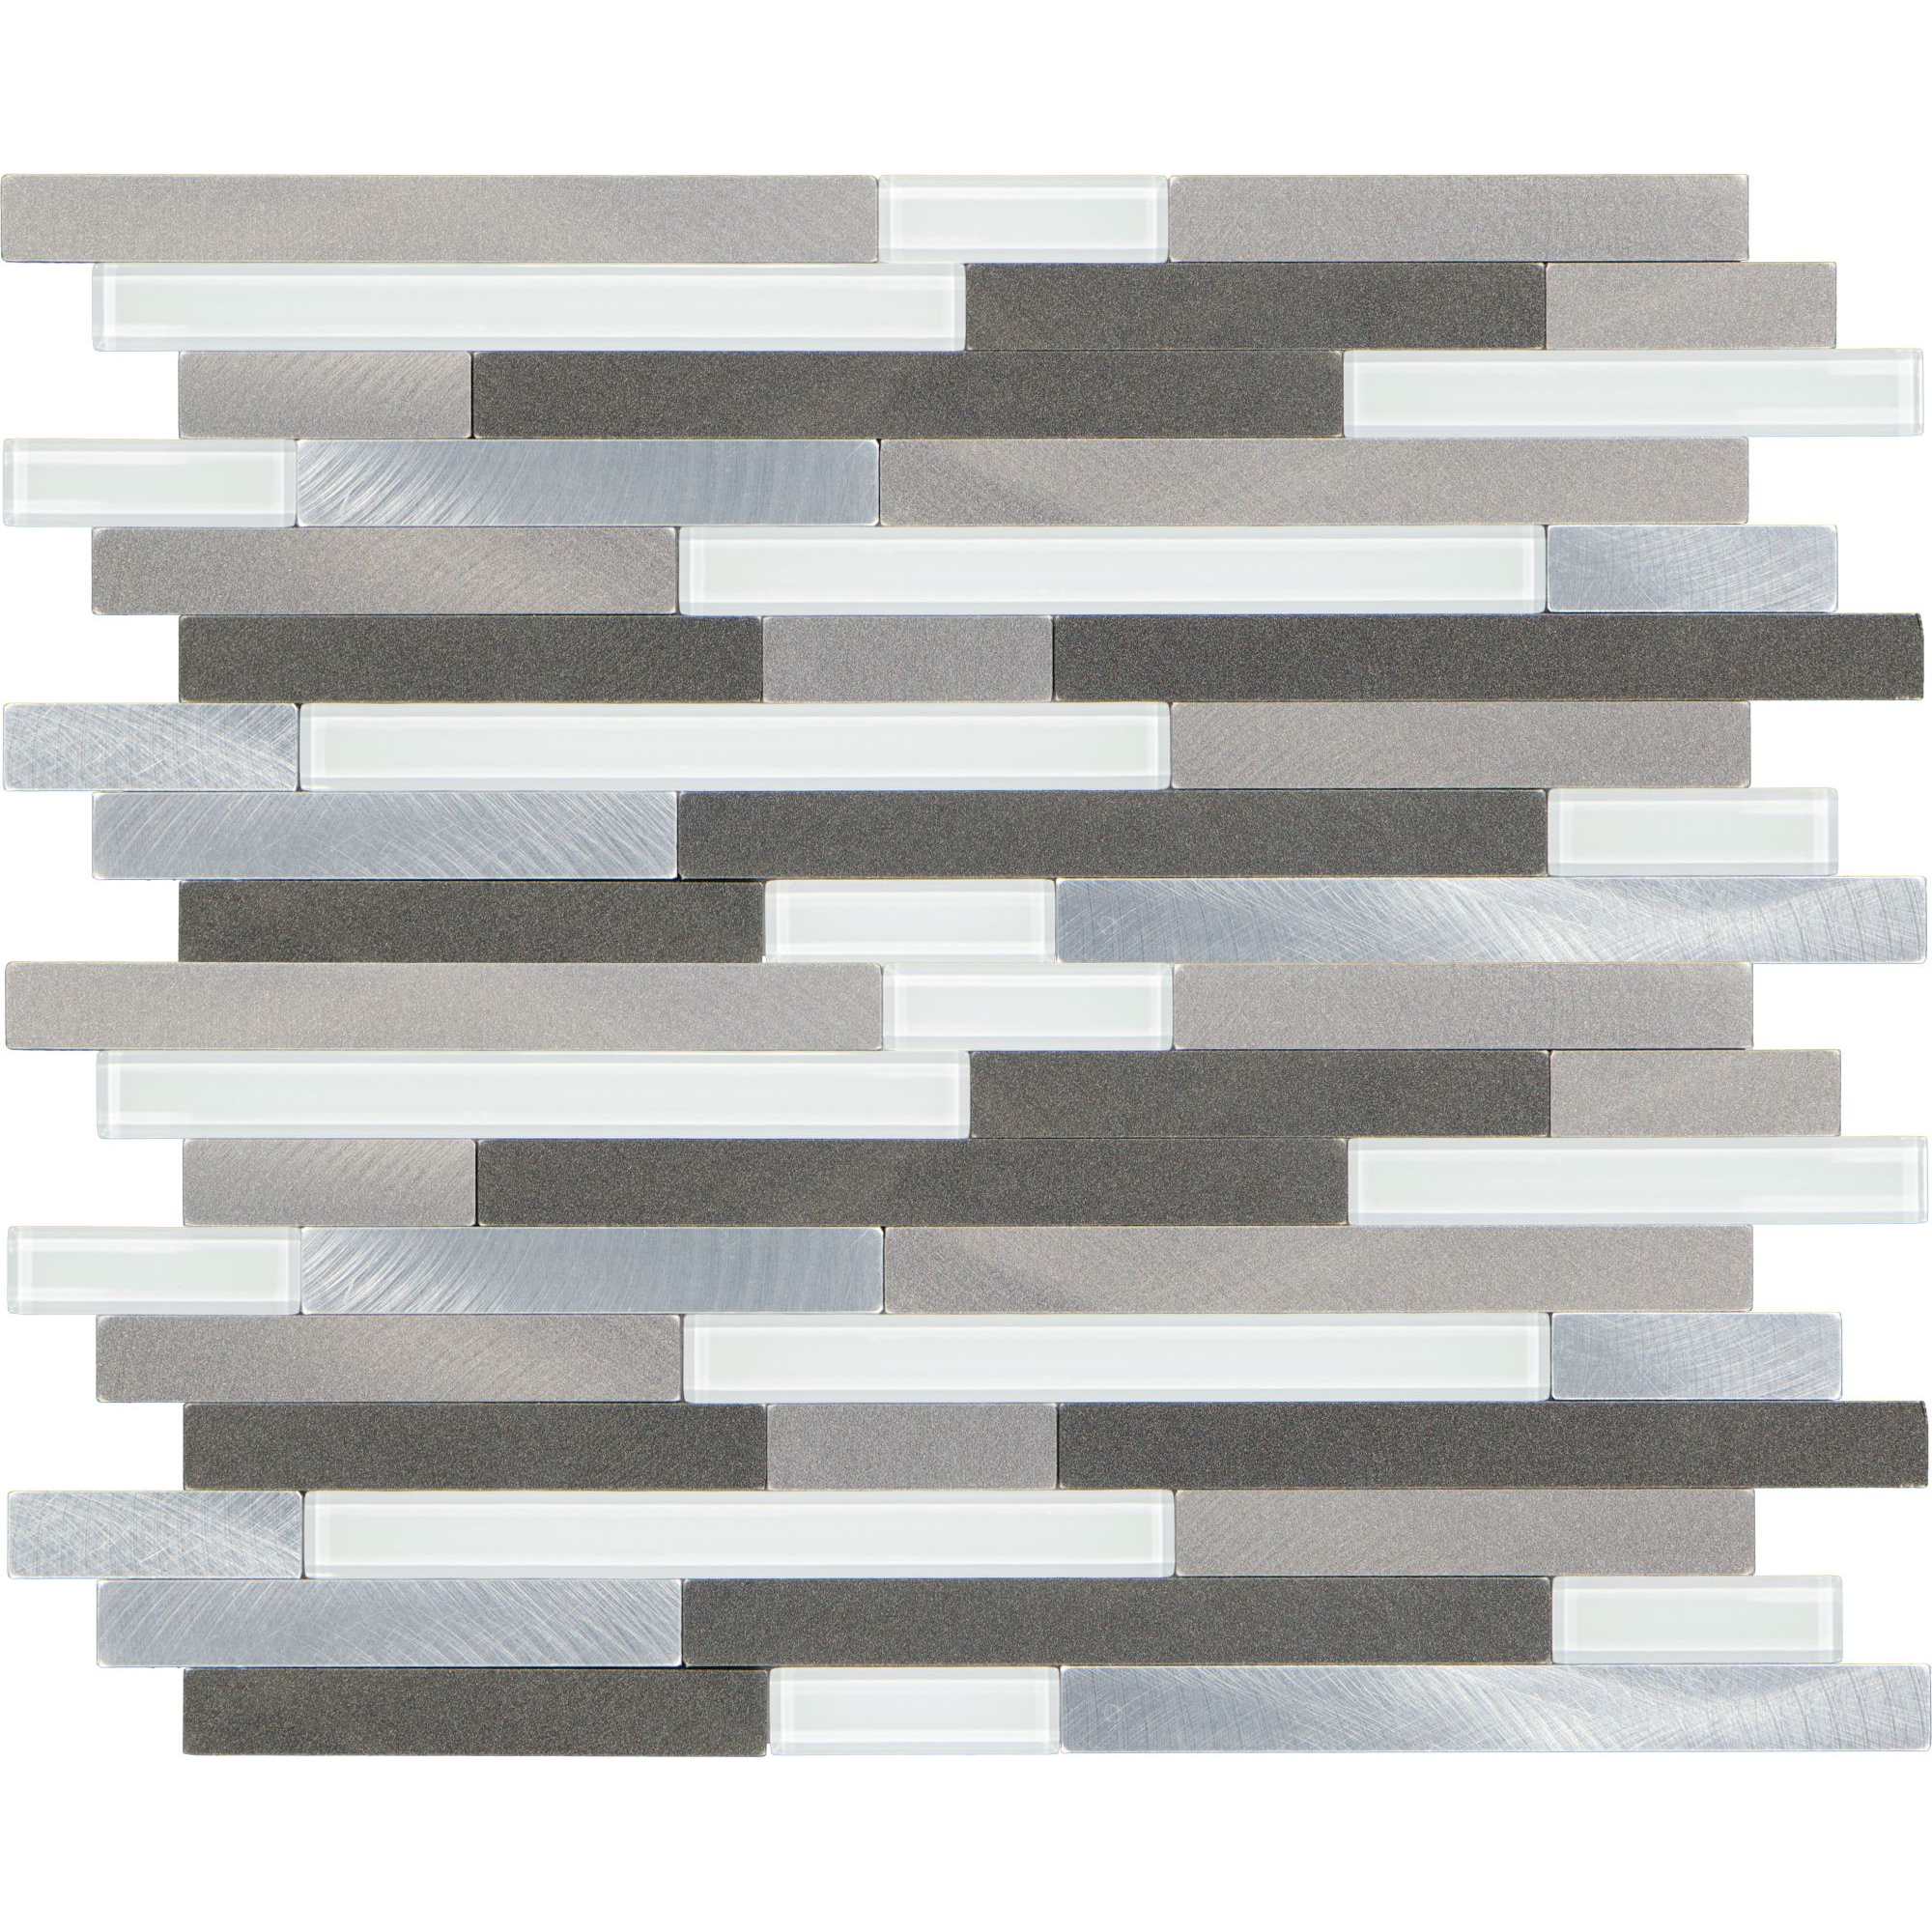 Mosaikfliese 'Easyglue' selbstklebend grau Kunststoff/Glas 30 x 30,5 cm + product picture